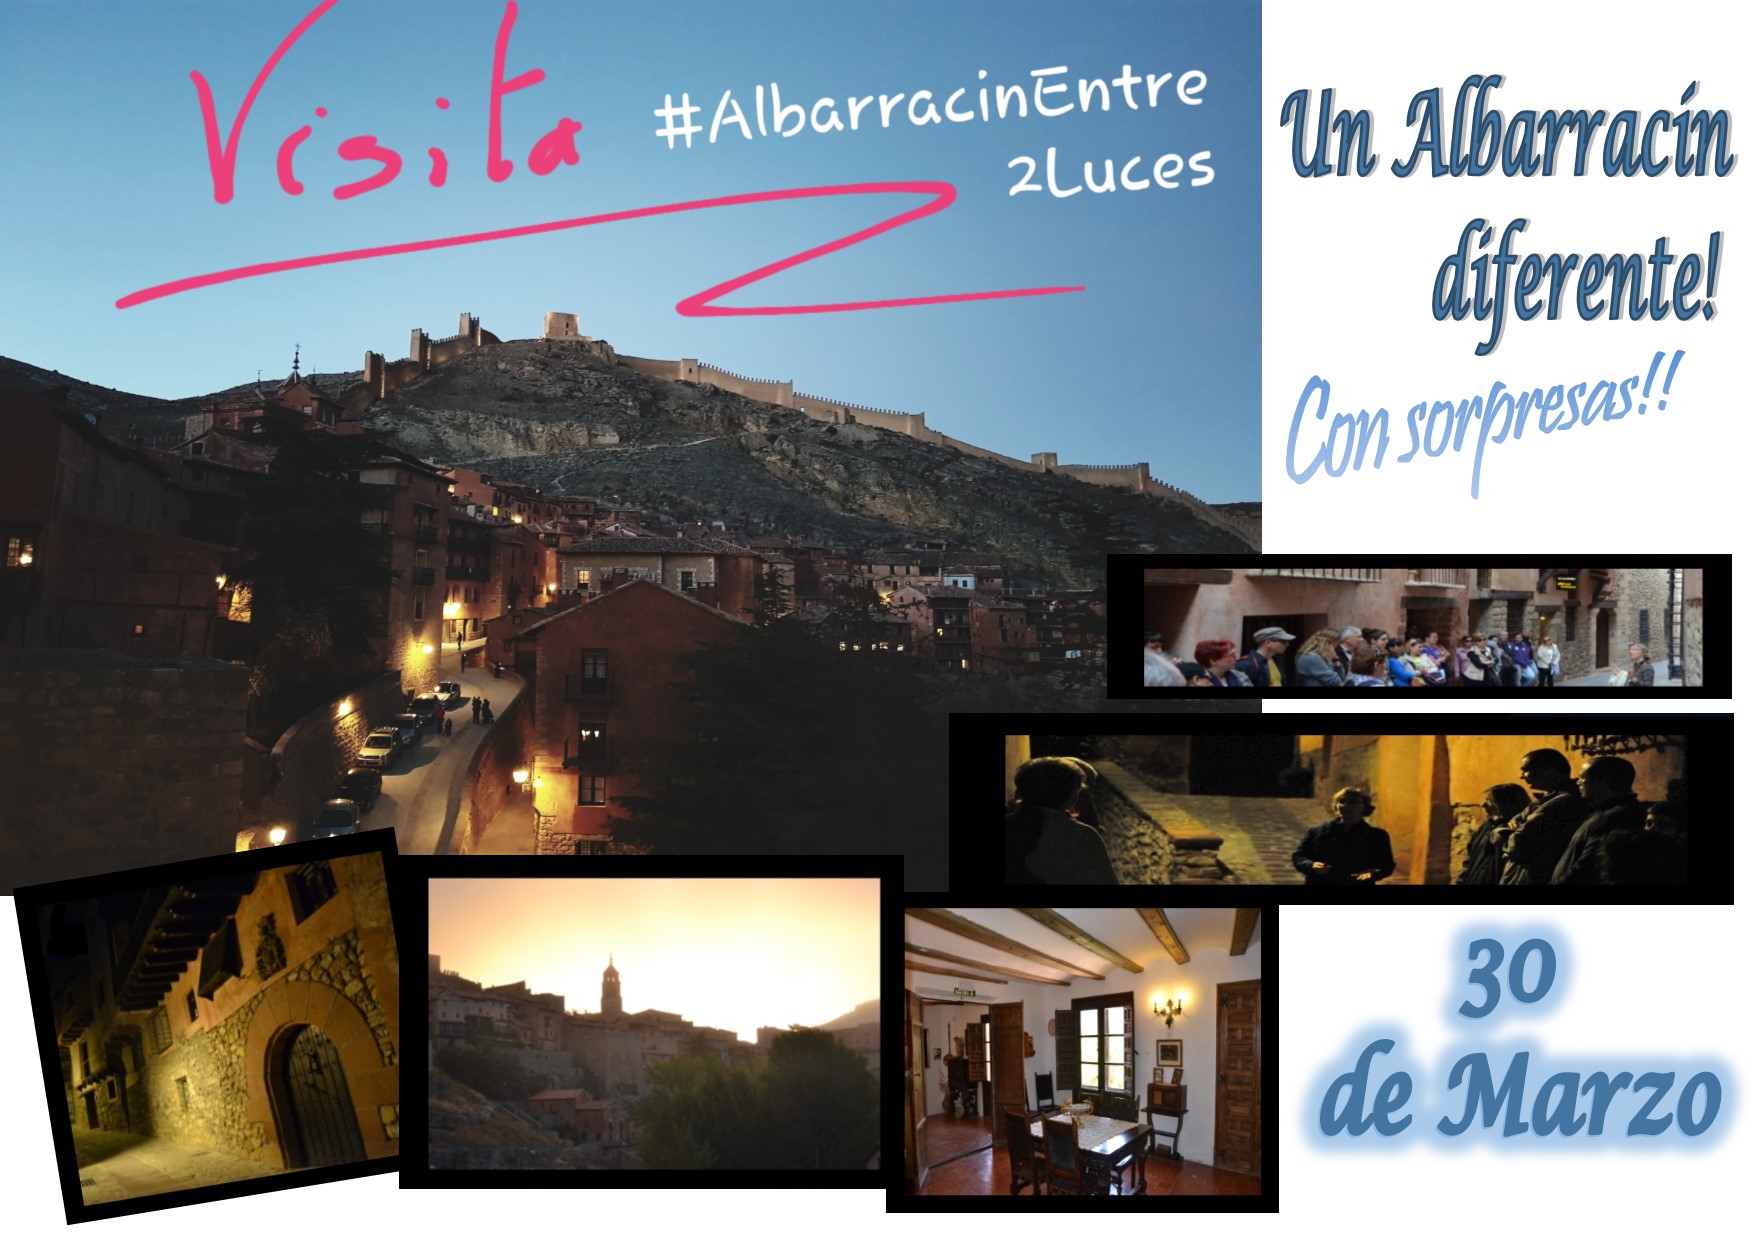 Este Sábado 30 de Marzo…a la tarde…Albarracín Entre 2 Luces con sorpresas!